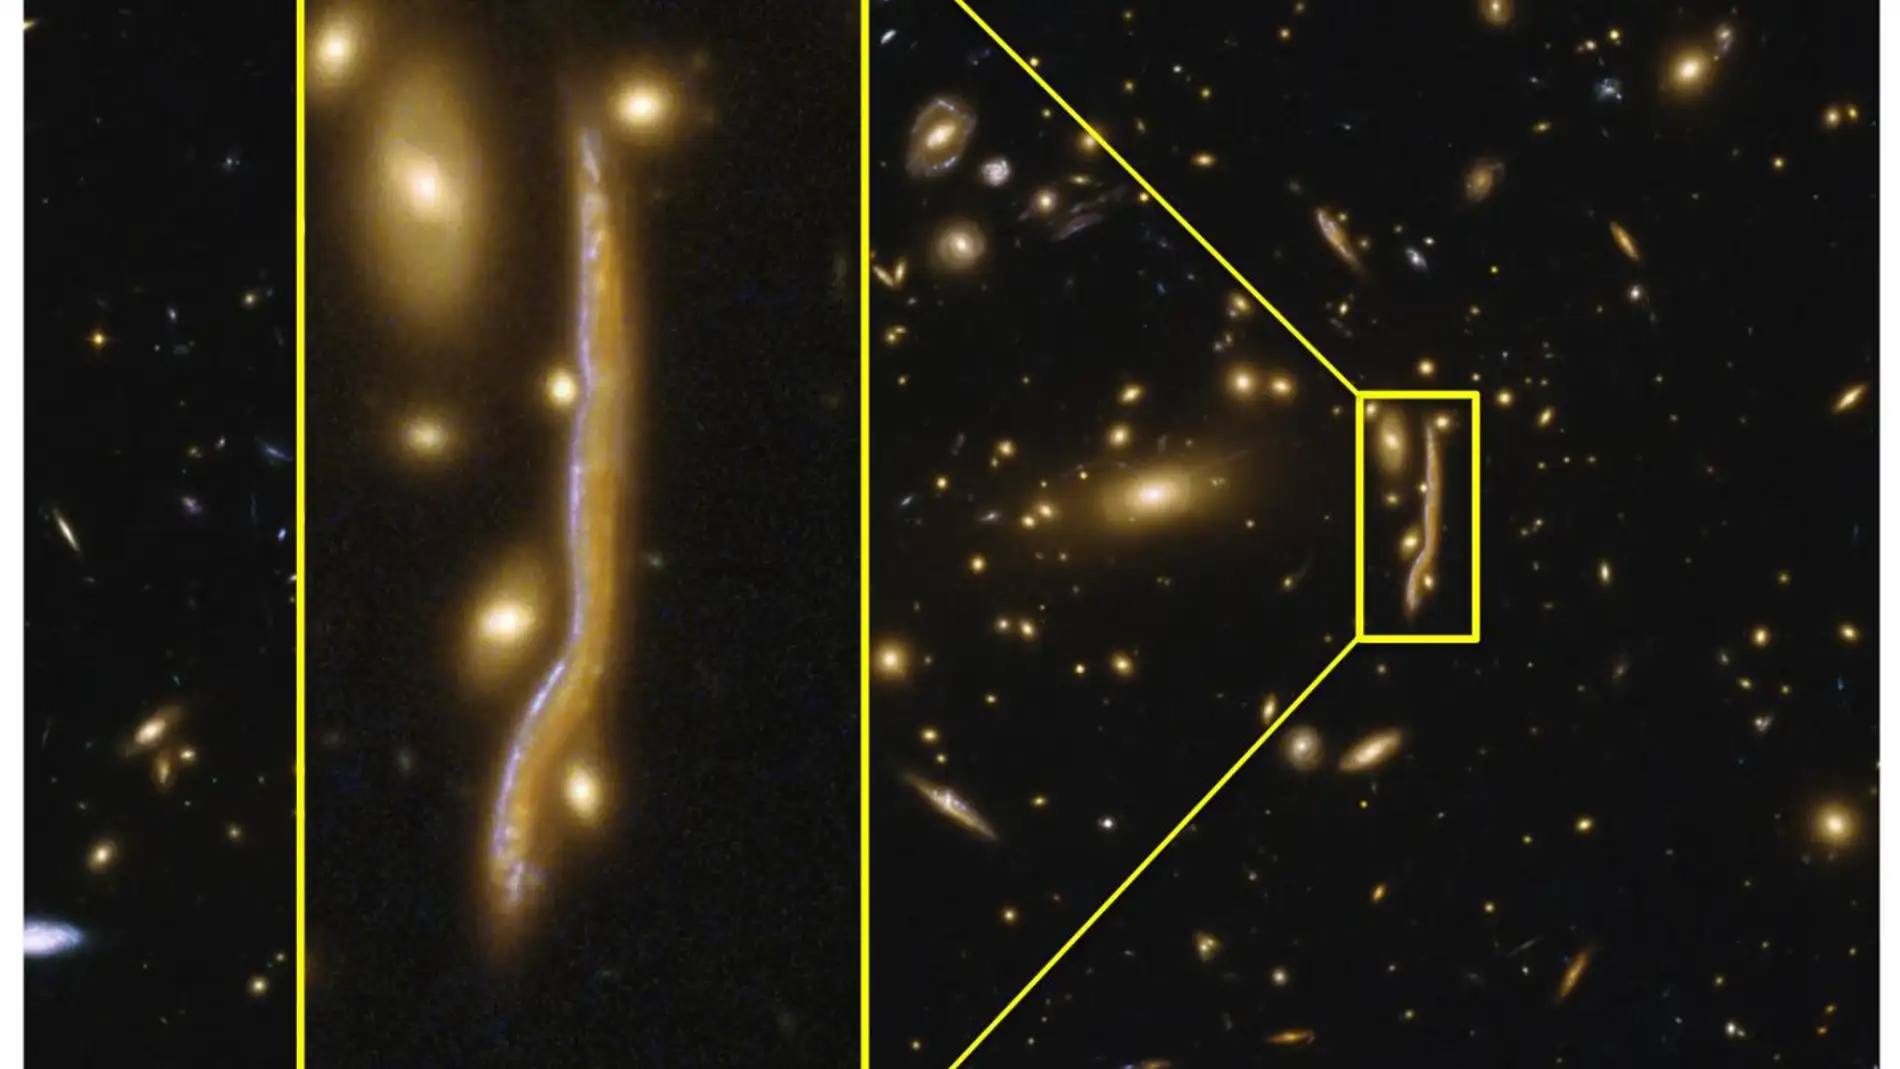 Una serpiente cosmica revela la estructura de las galaxias lejanas